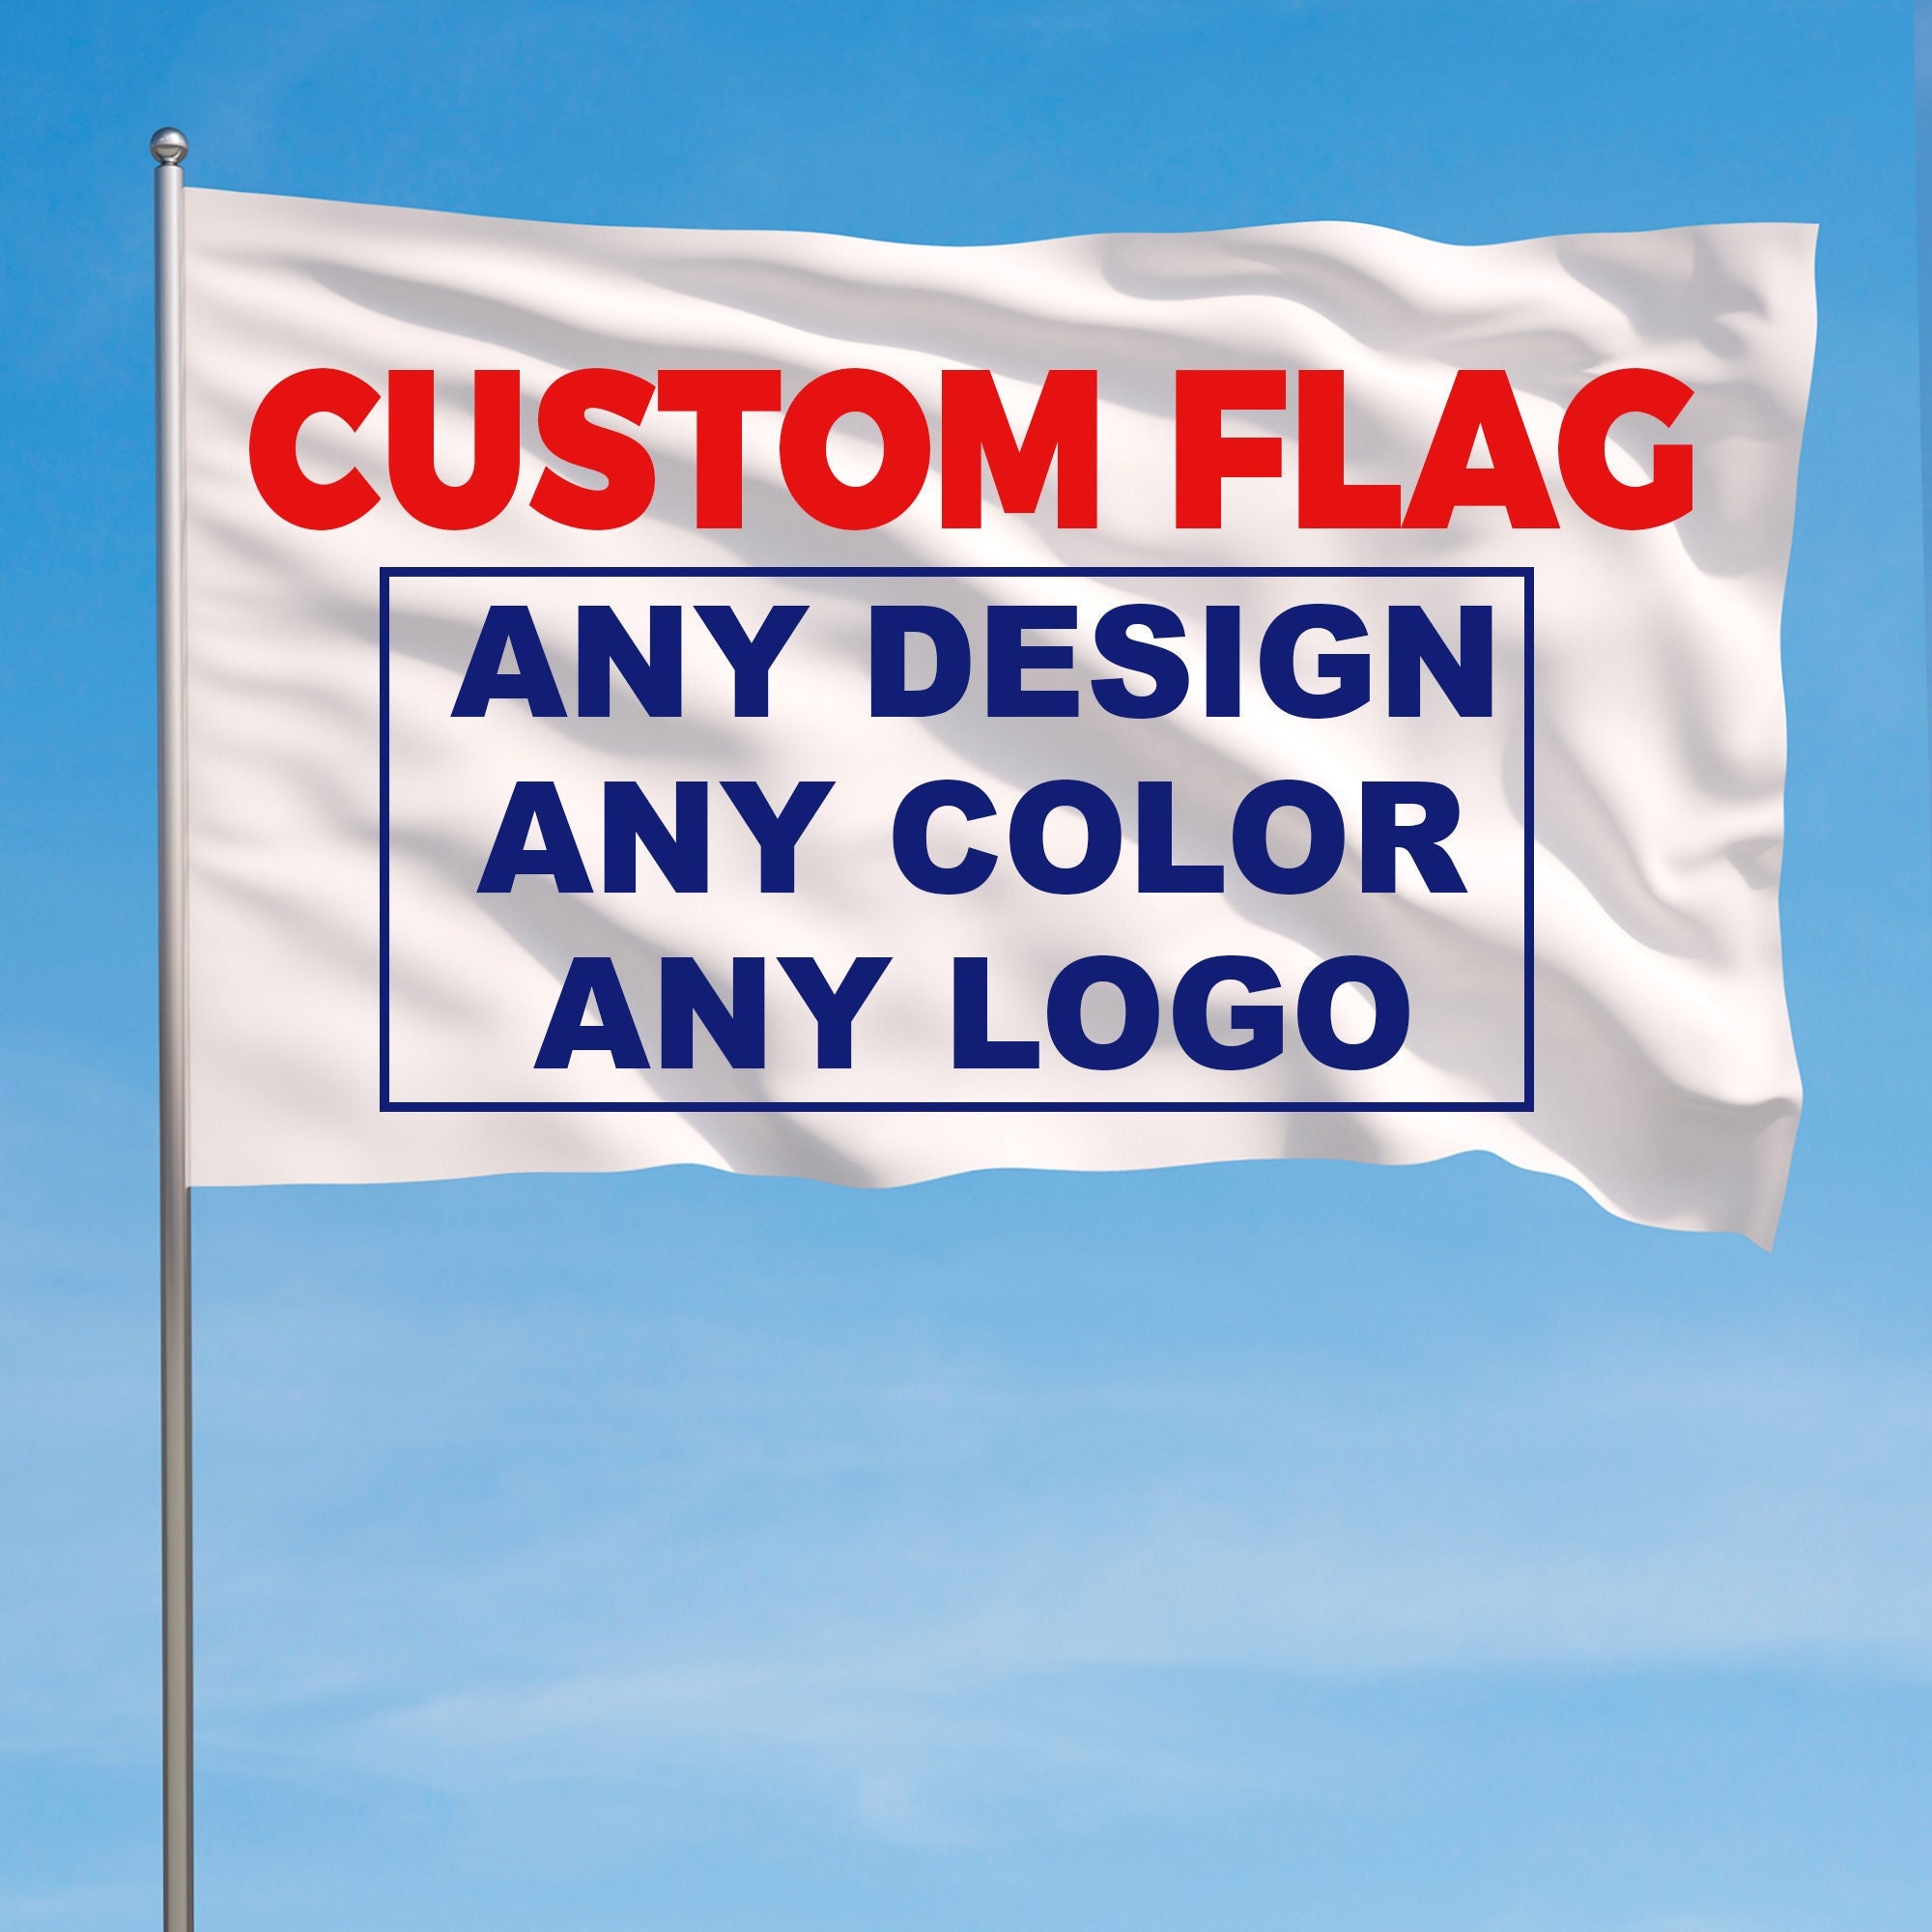 Drapeau personnalisé avec votre propre logo/design/mots, drapeau